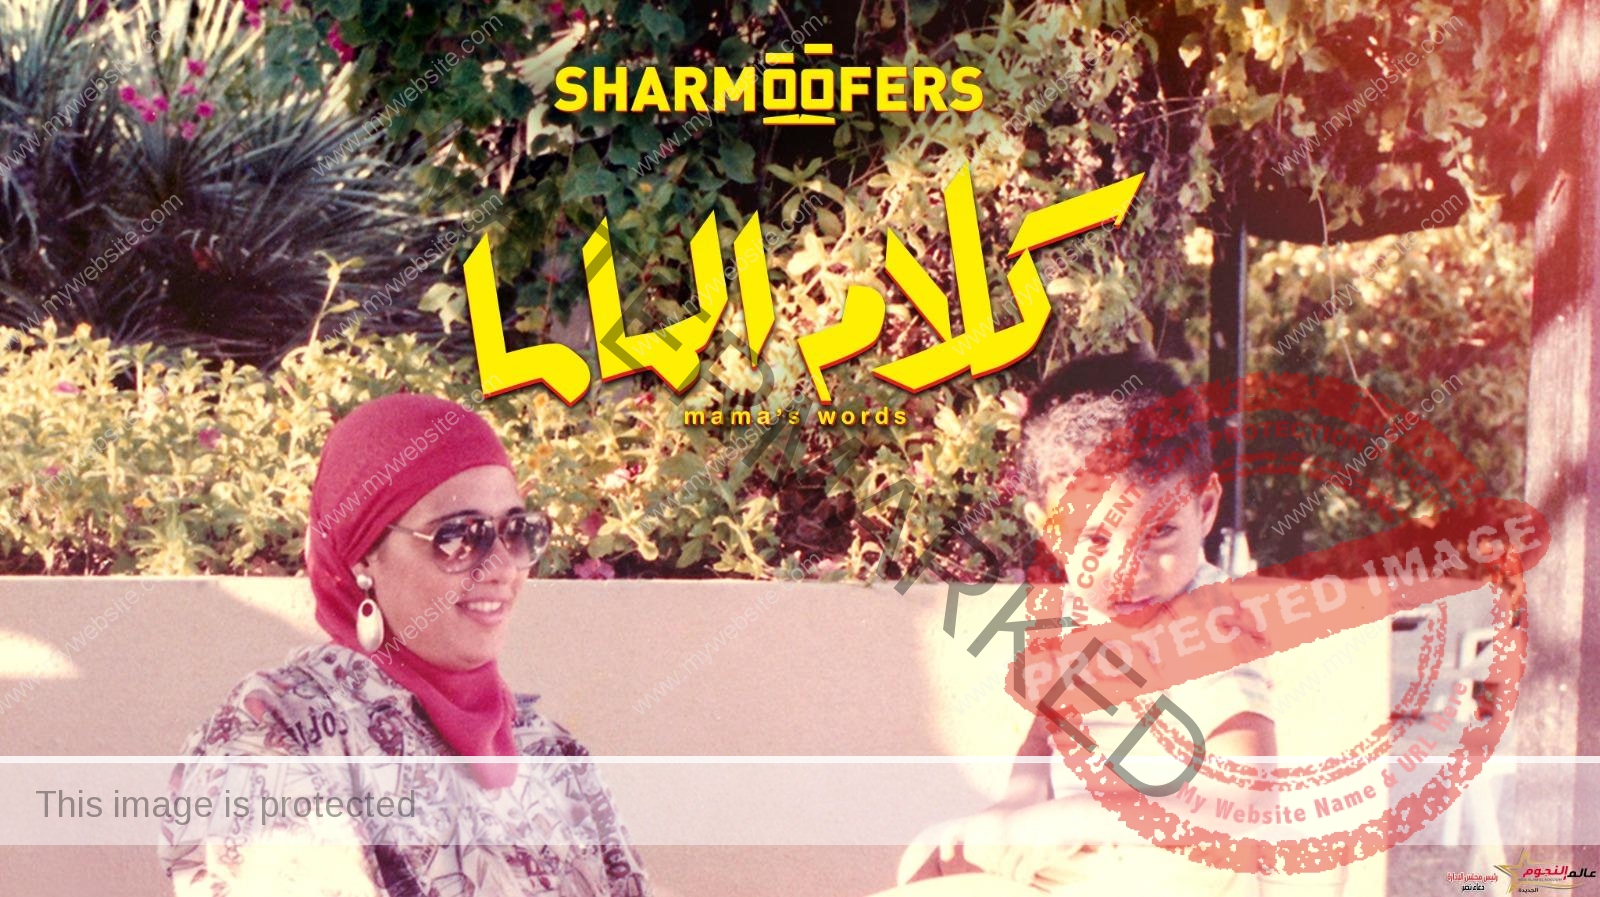 شارموفرز يطرح "كلام الماما" وأحمد بهاء يهديها إلى والدته